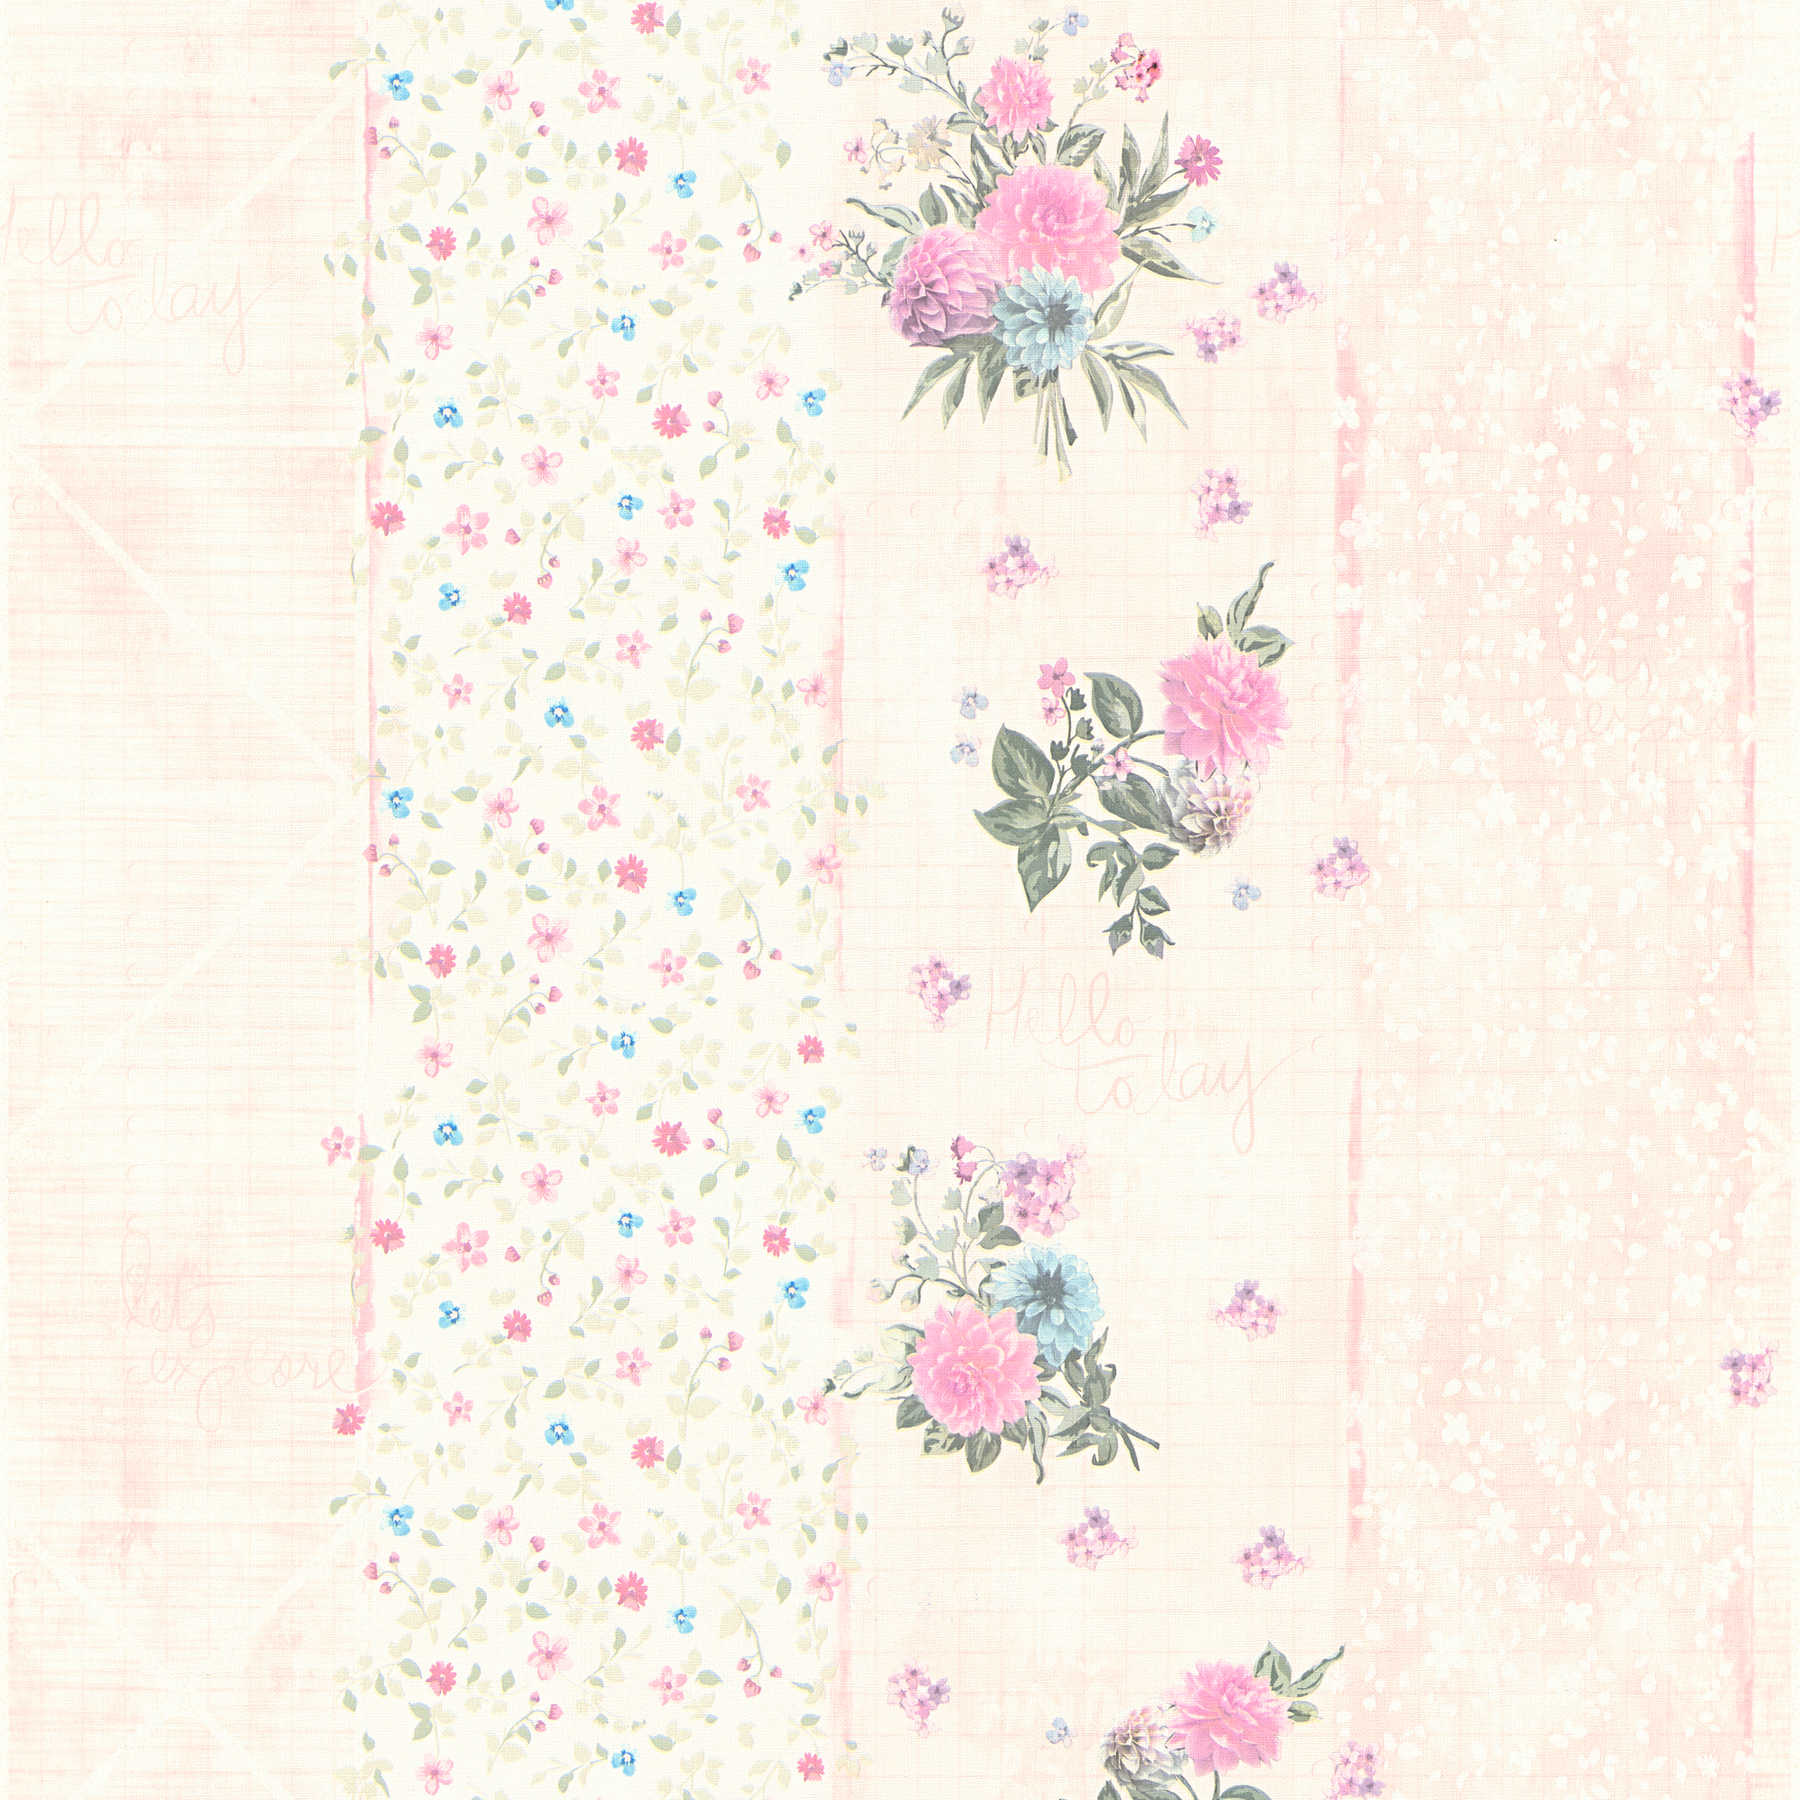 Bloemenbehang met streepmotief - veelkleurig, roze
